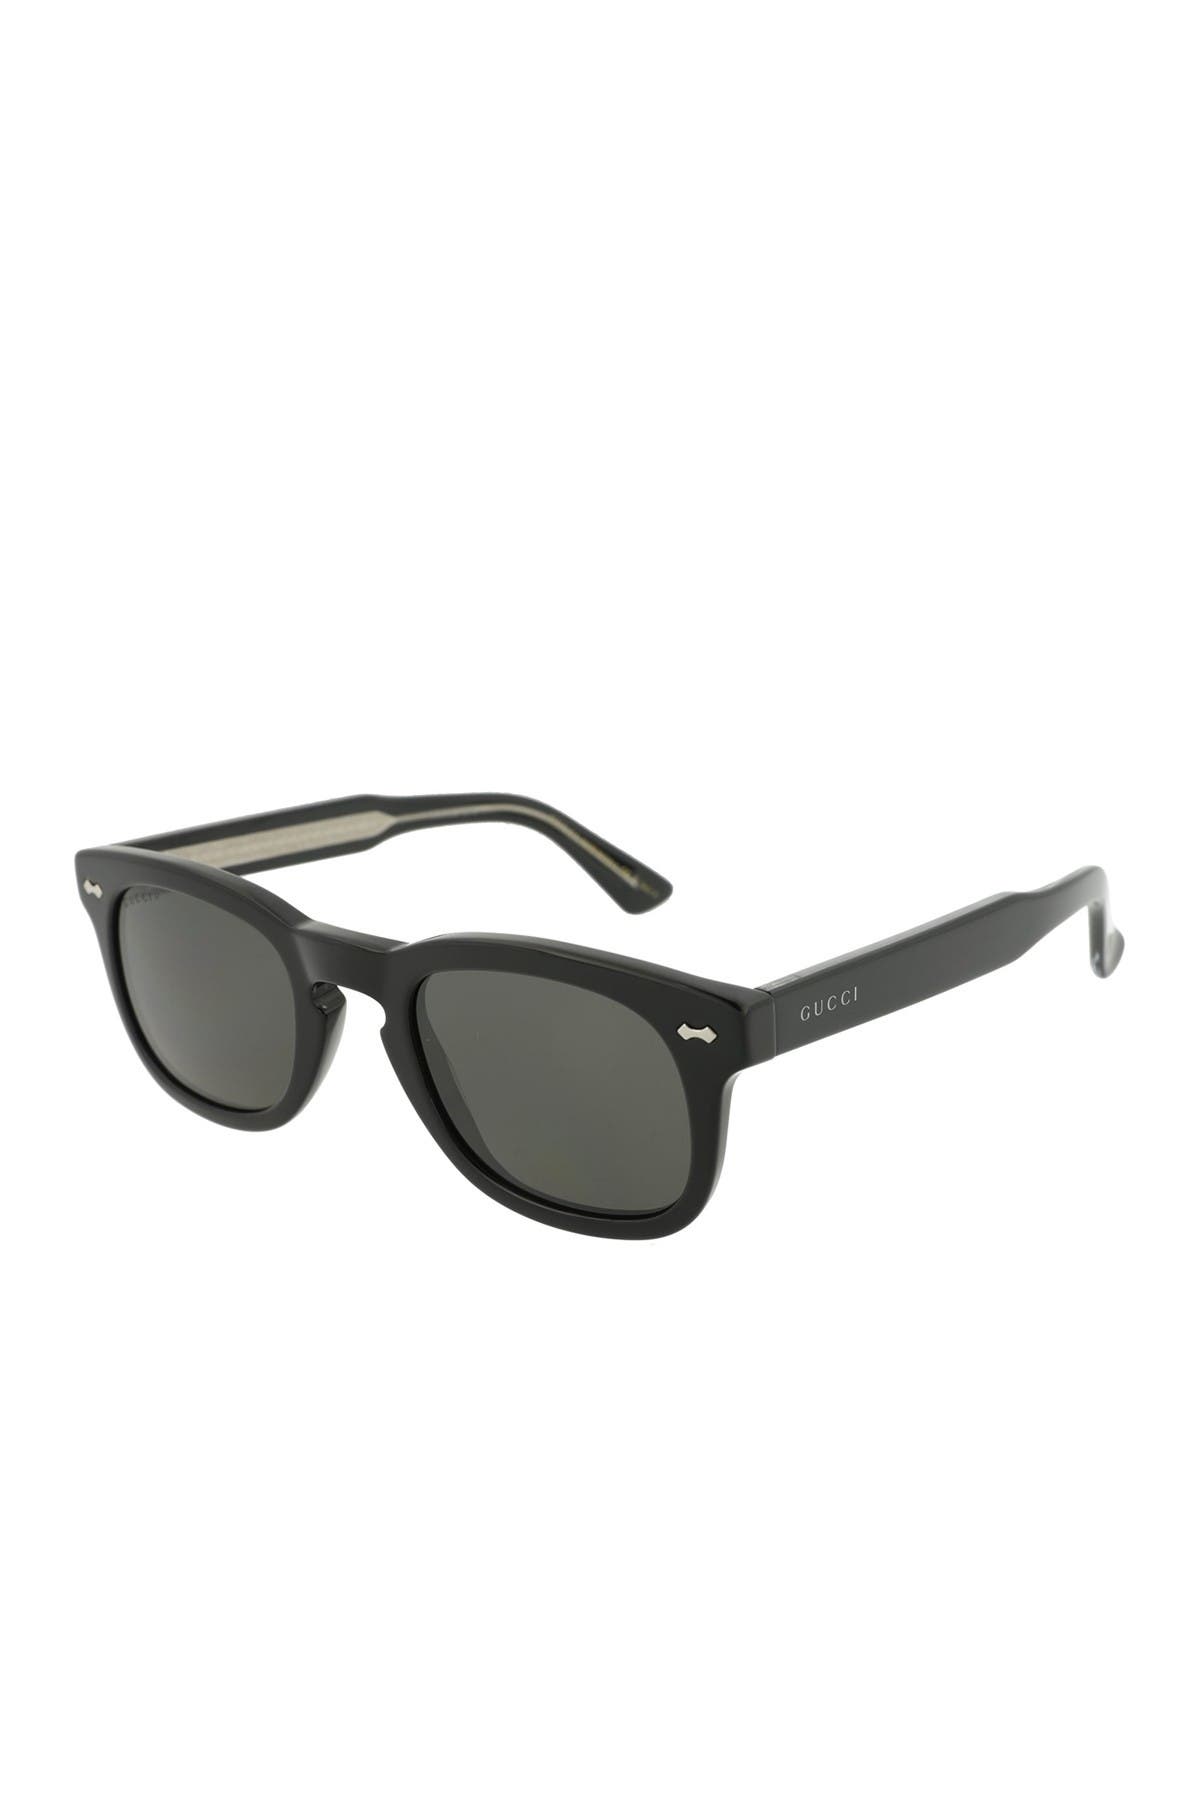 GUCCI | Core 49mm Square Sunglasses 